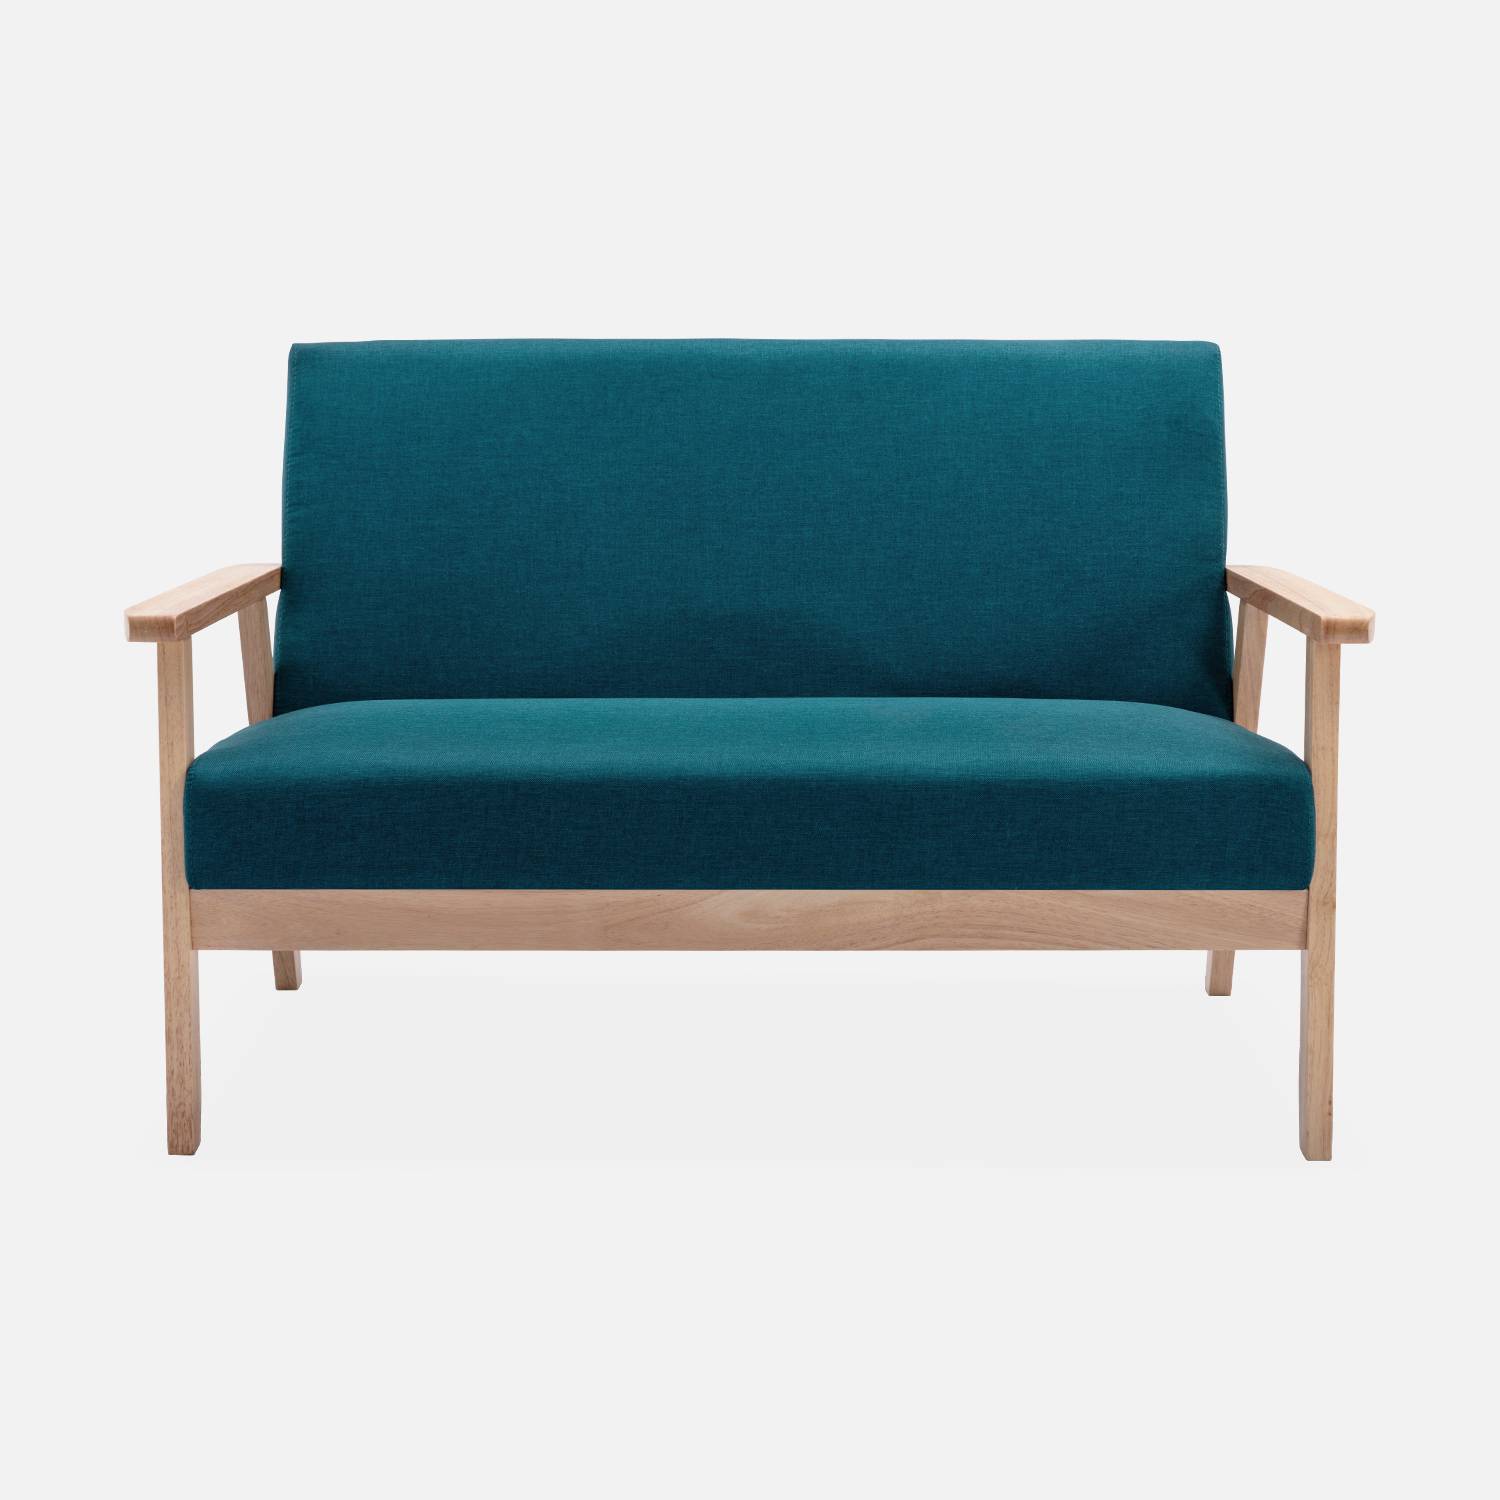 Panca per divano in legno e tessuto blu petrolio, Isak, L 114 x P 69,5 x H 73cm Photo3